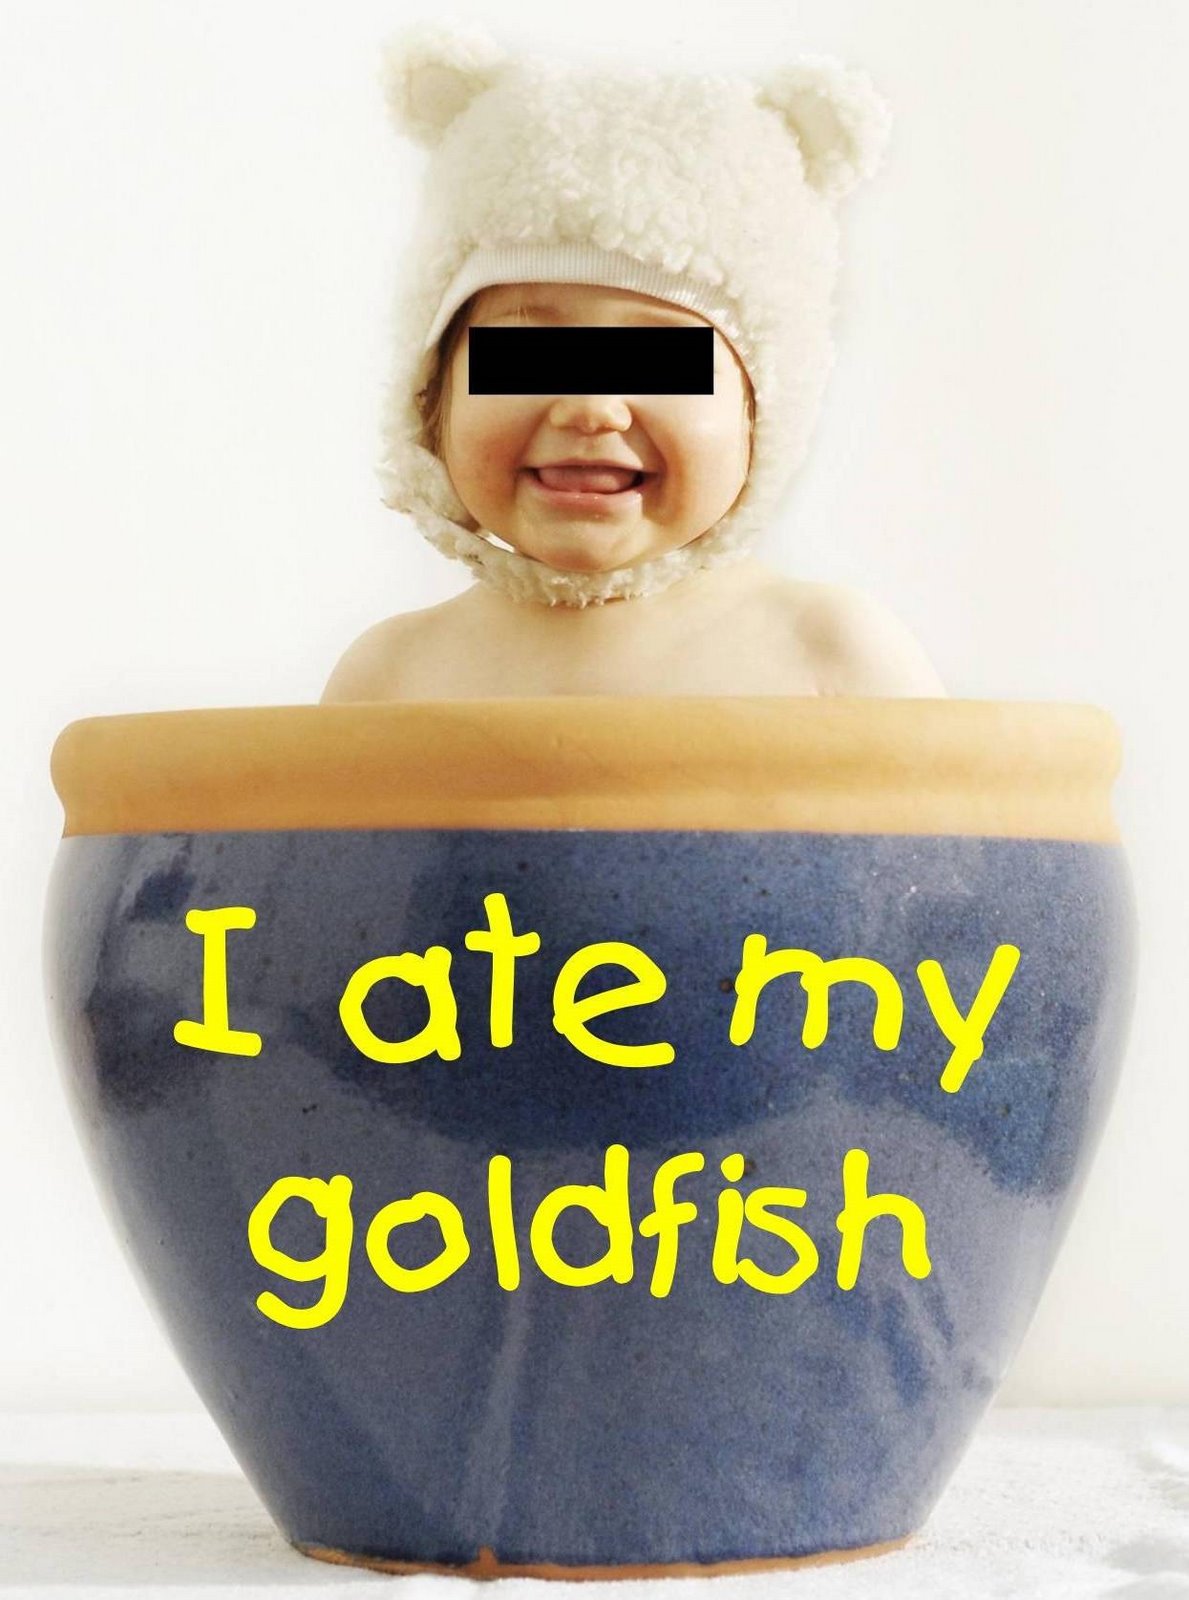 I ate my goldfish